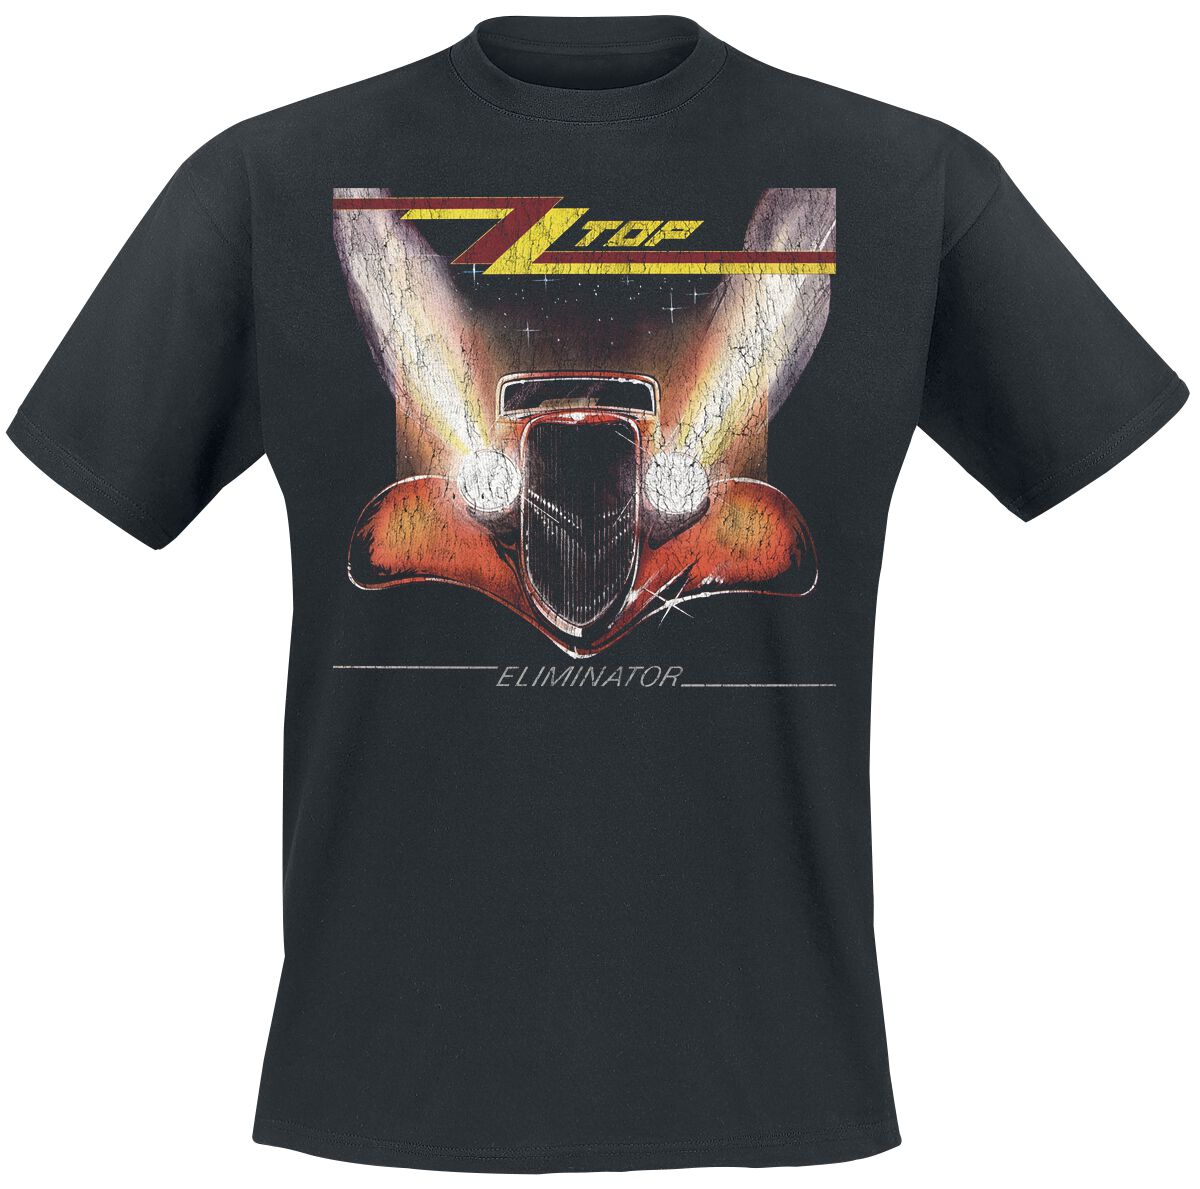 ZZ Top T-Shirt - Eliminator - S bis 3XL - für Männer - Größe 3XL - schwarz  - Lizenziertes Merchandise!